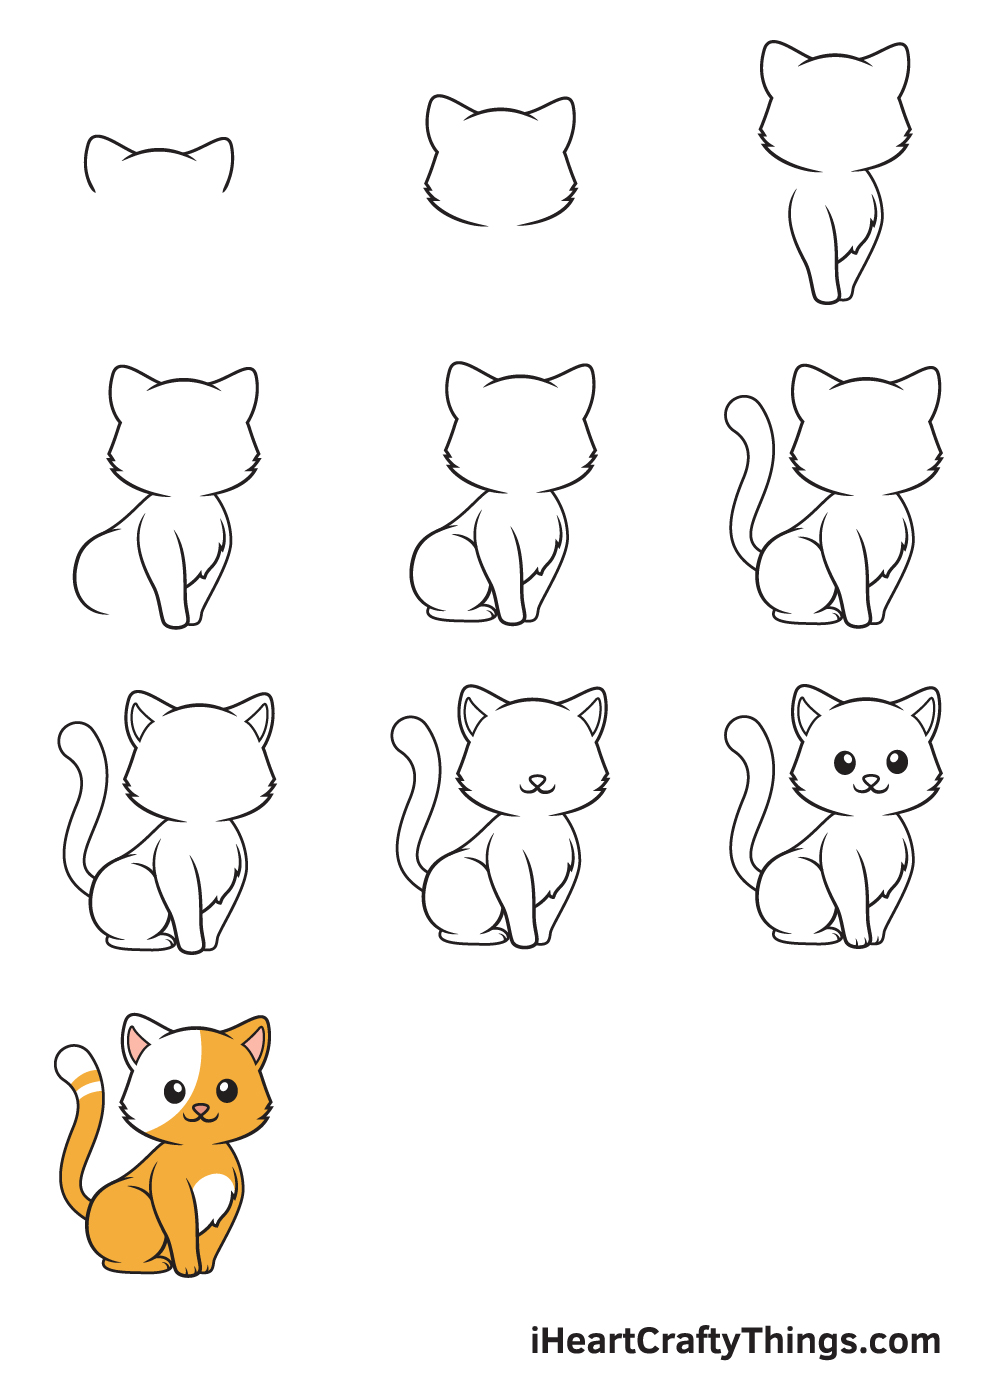 Drawing Kitten in 9 Easy Steps